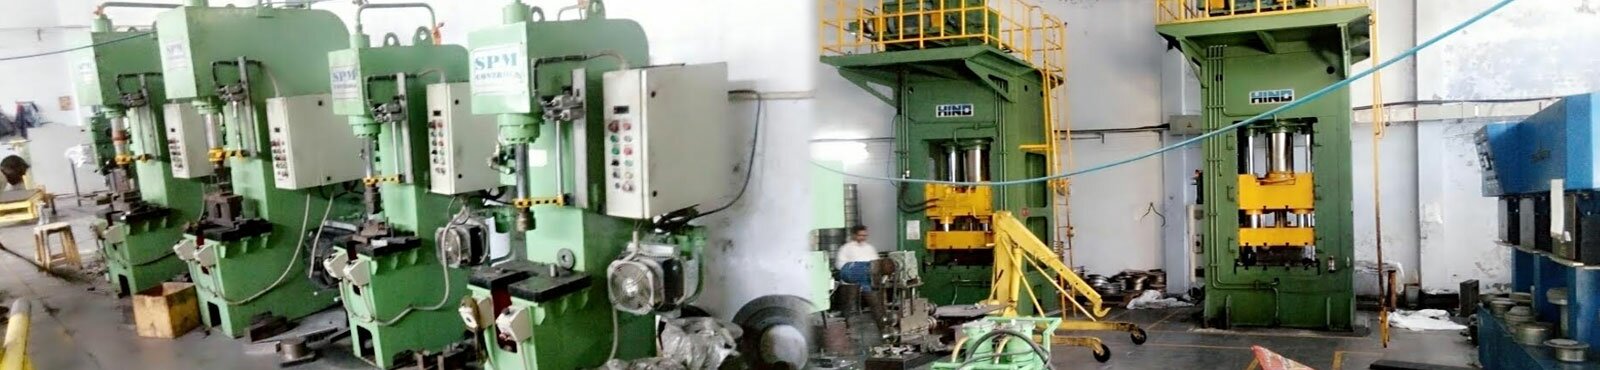 CNC Laser Cutting in Wazirpur